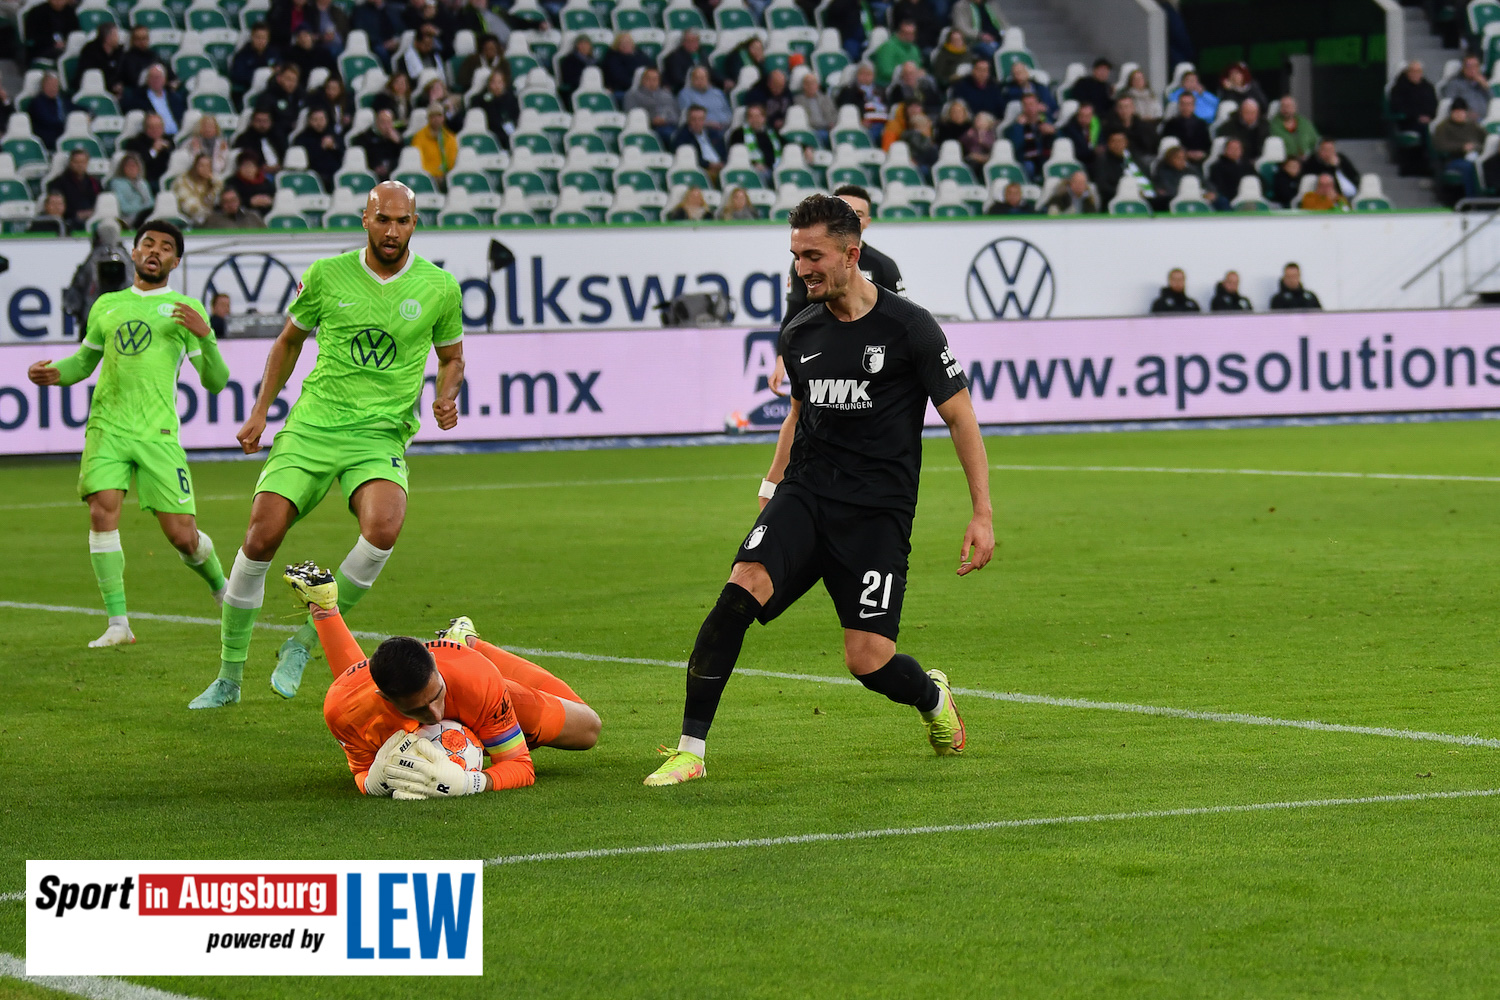 VfL Wolfsburg - FCA 06.11.21 - 21